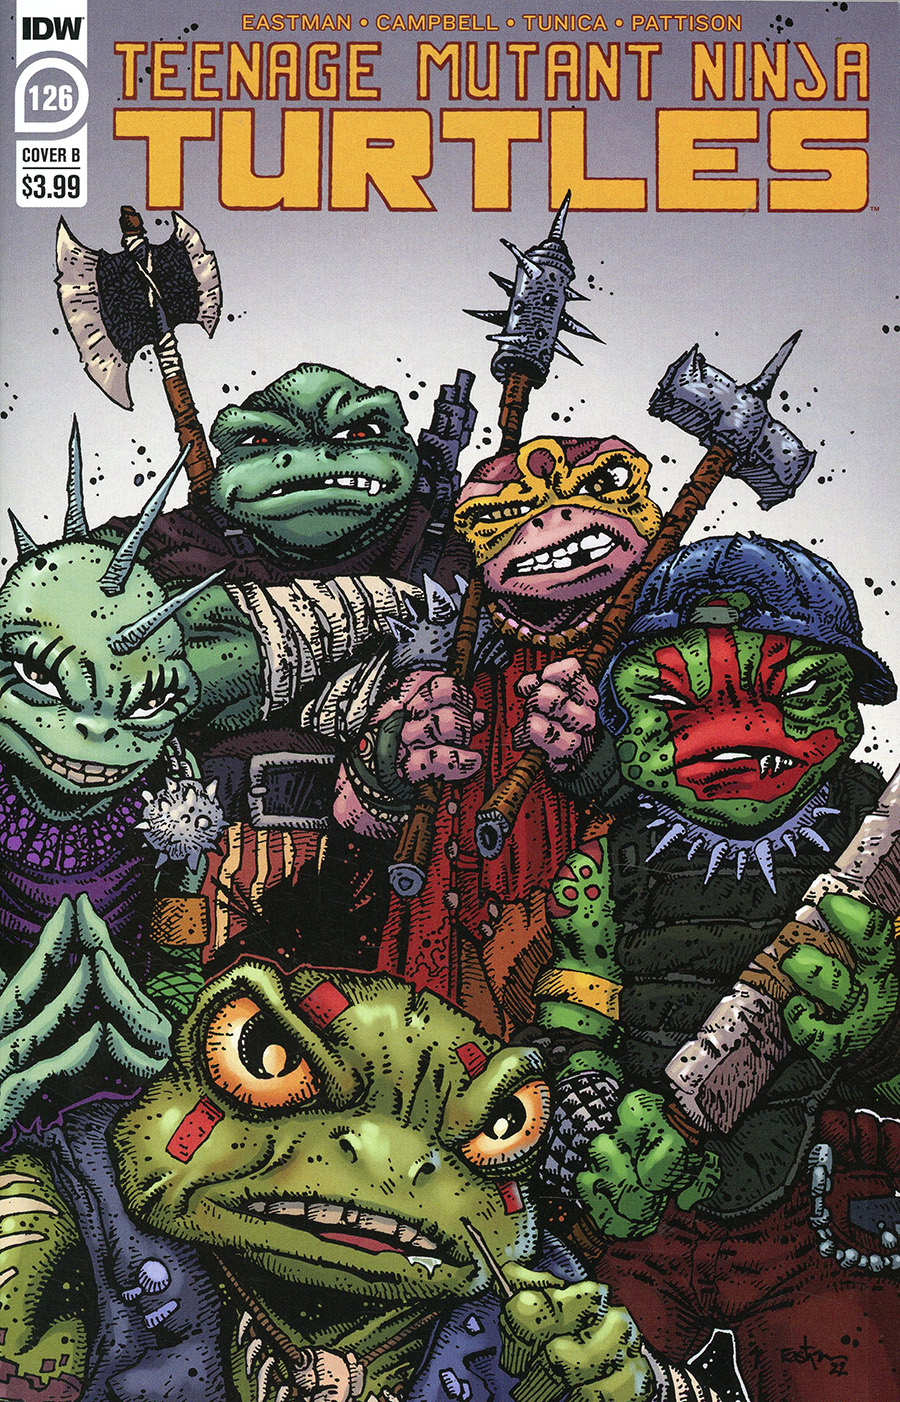 Teenage Mutant Ninja Turtles Vol 5 #126 Cover B Variant Kevin Eastman Cover